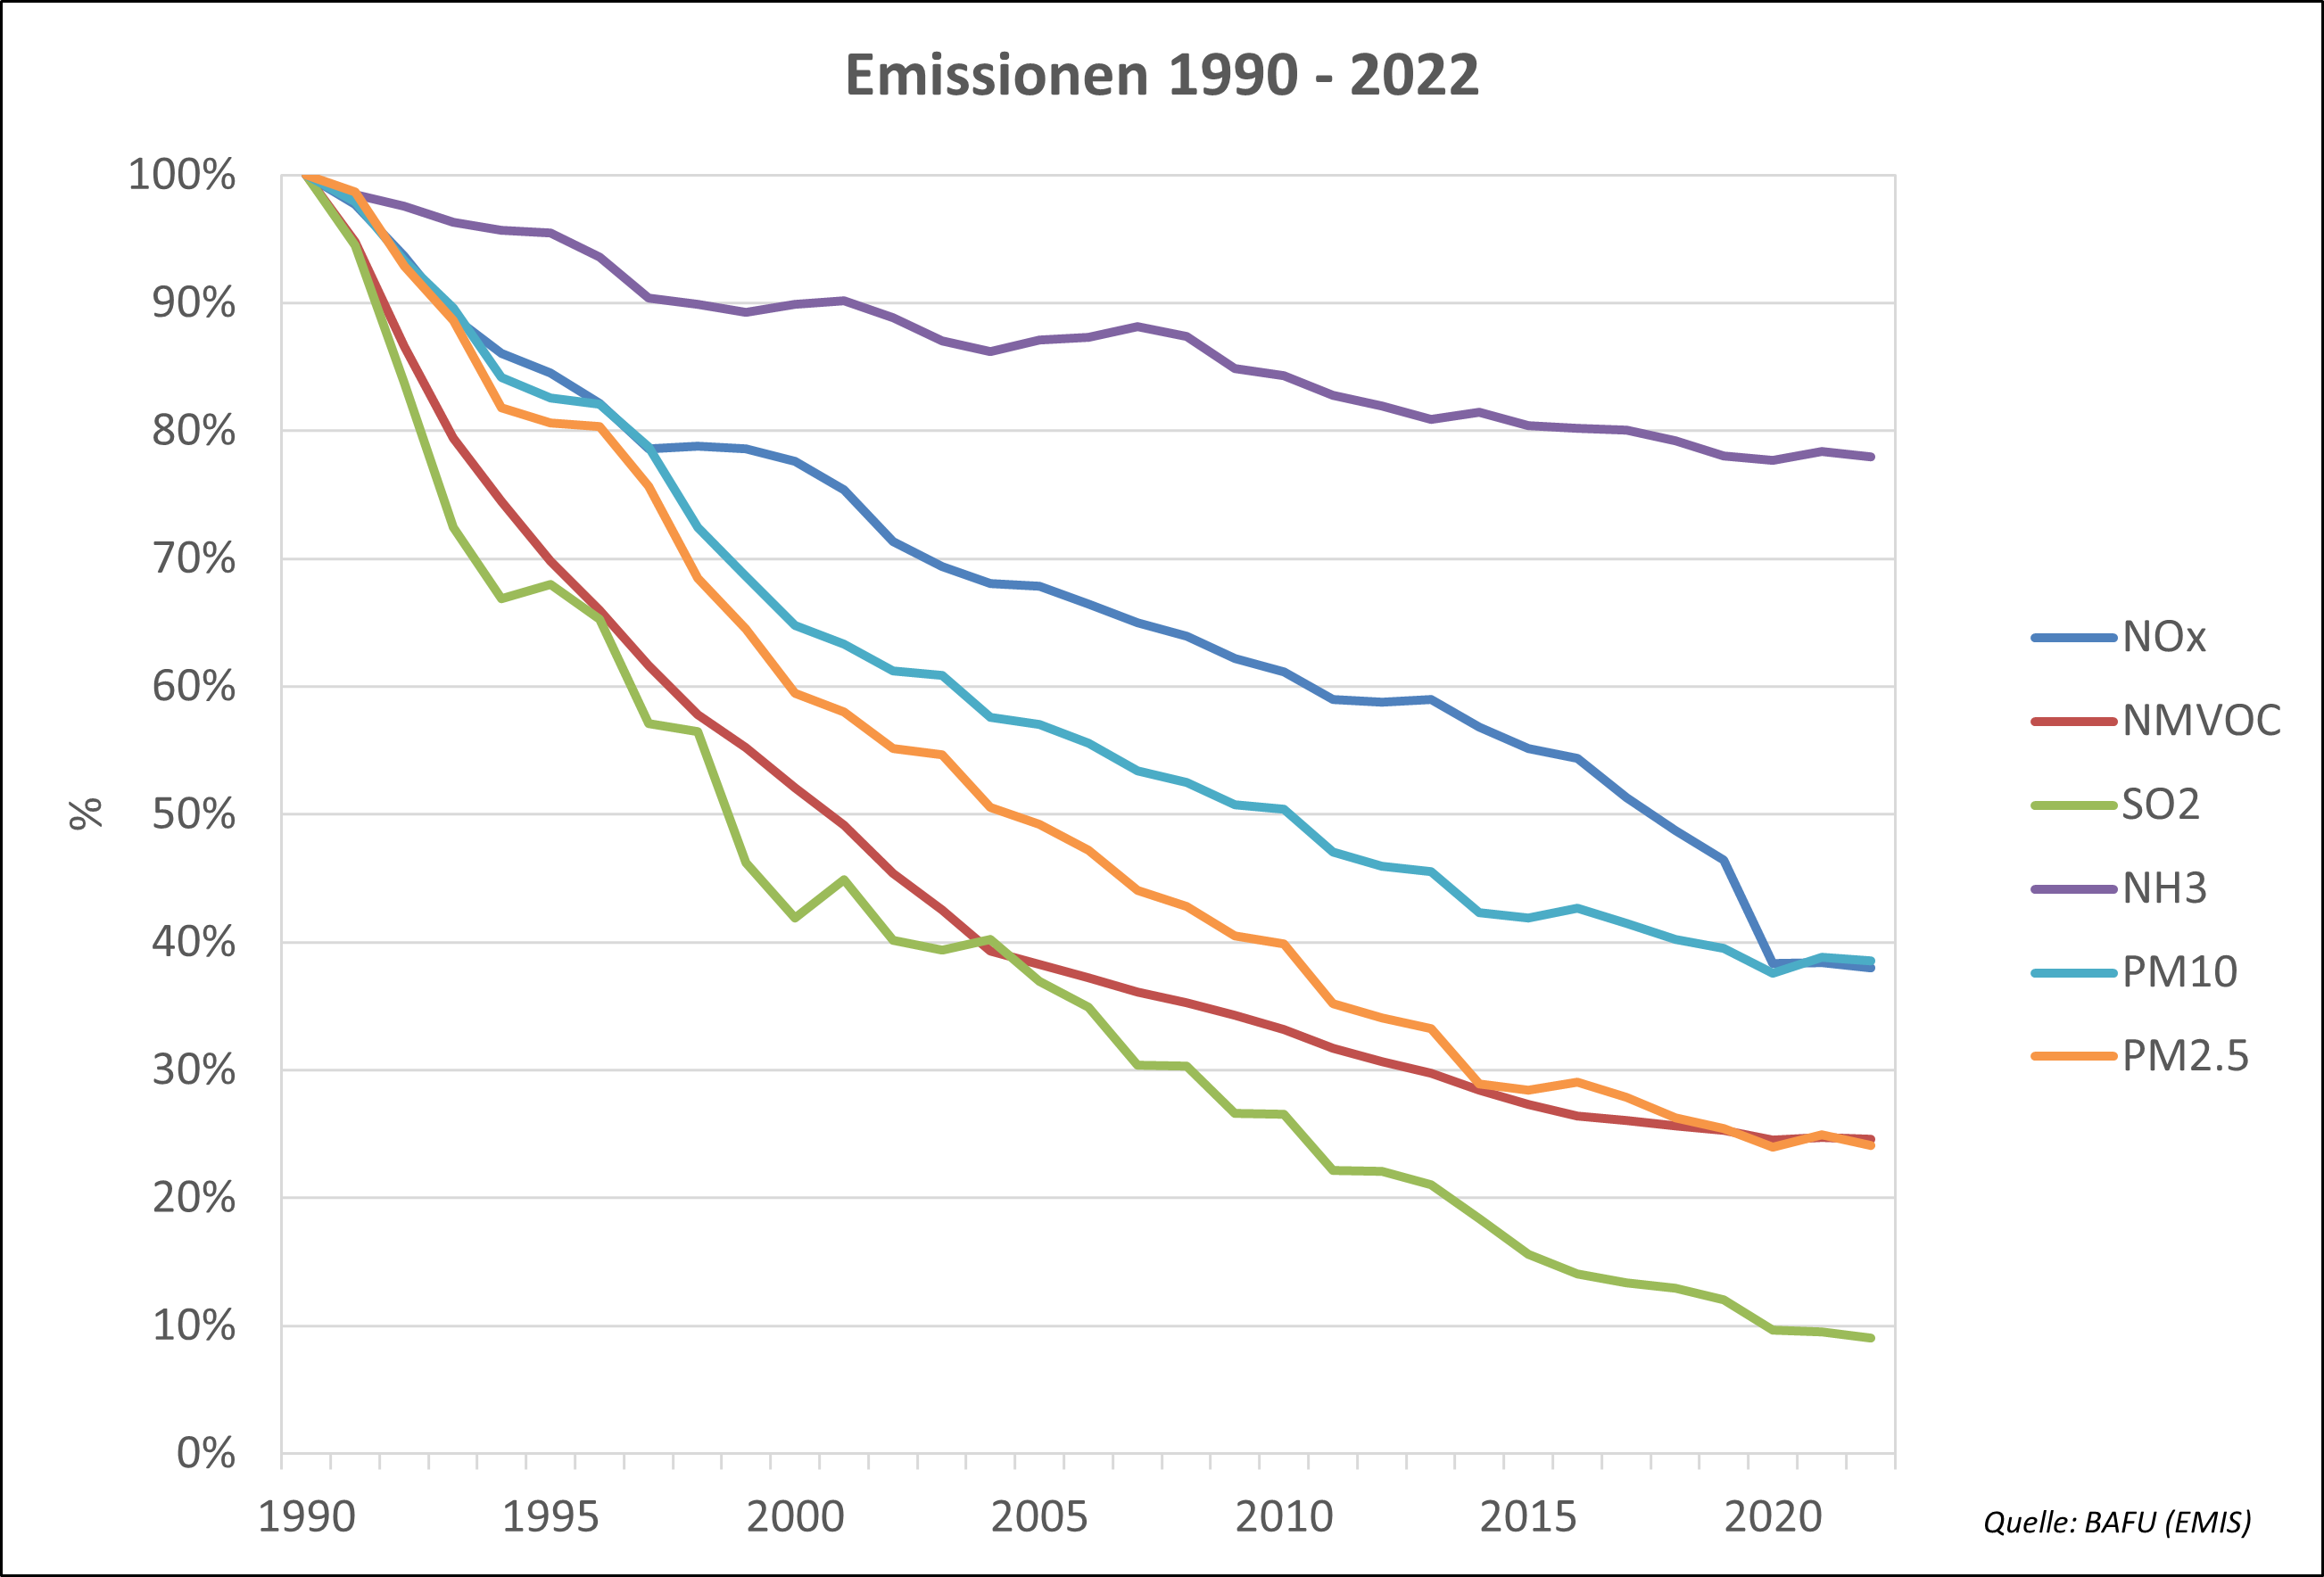 Verlauf der Emissionen 1990-2022 von Stickstoffdioxid (NO2), flüchtigen organischen Verbindungen ohne Methan (NMVOC), Schwefeldioxid (SO2), Ammoniak (NH3) und Feinstaub (PM10 und PM2.5)